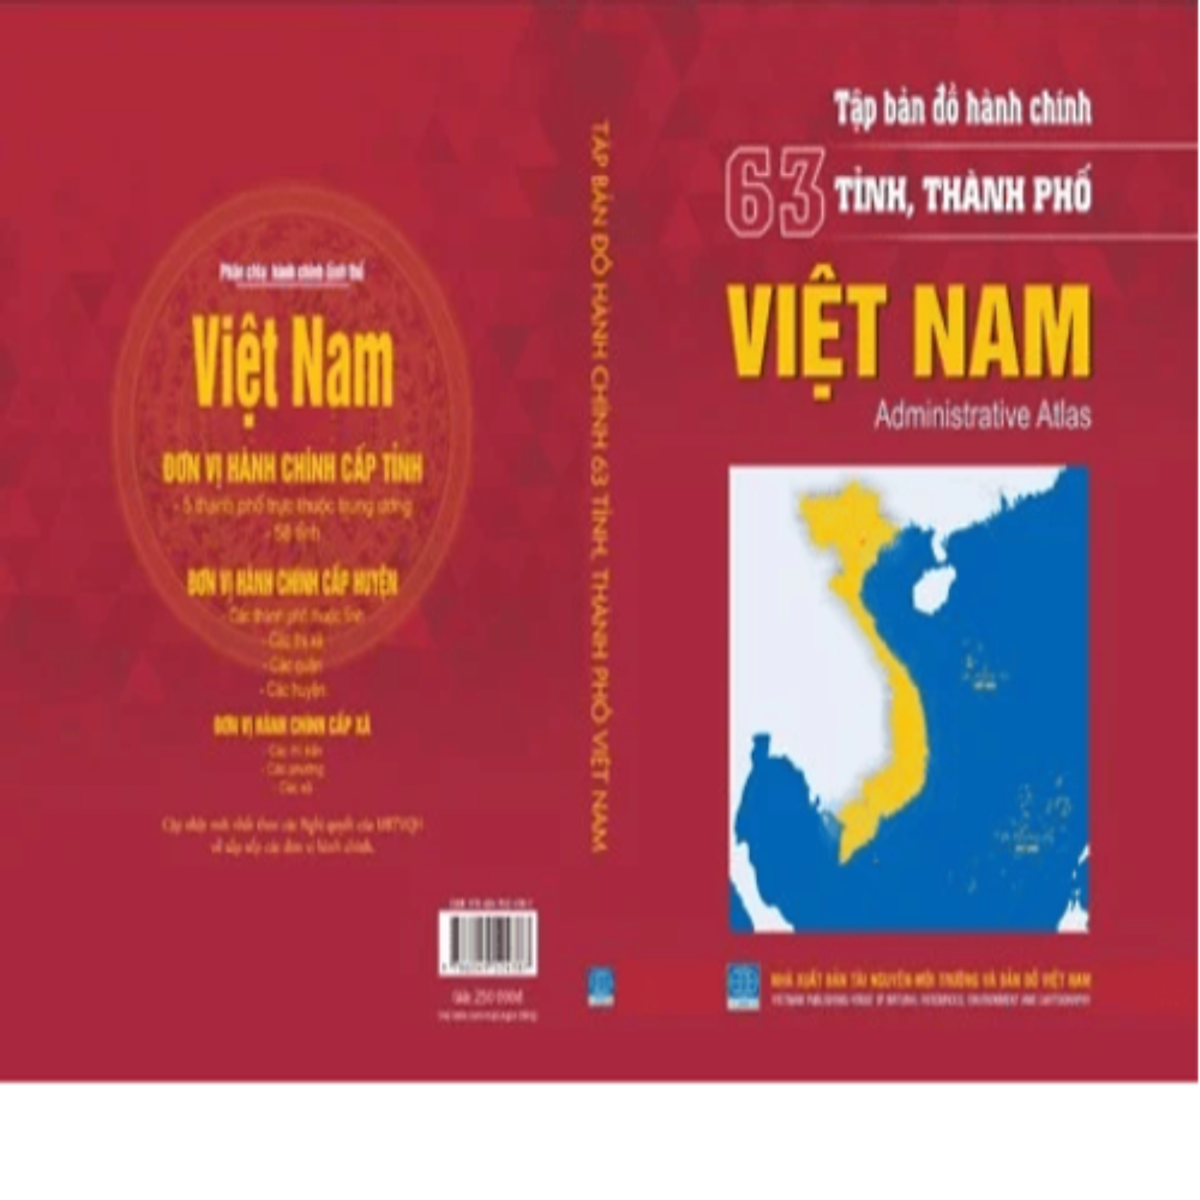 Tập bản đồ 63 tỉnh thành phố Việt Nam: Khám phá sự khác biệt giữa các tỉnh thành phố, về phát triển kinh tế, văn hóa, du lịch và khả năng vận hành cơ sở hạ tầng. Bằng cách tìm hiểu sự tiến bộ của các khu vực cùng những con số thống kê đầy thú vị.